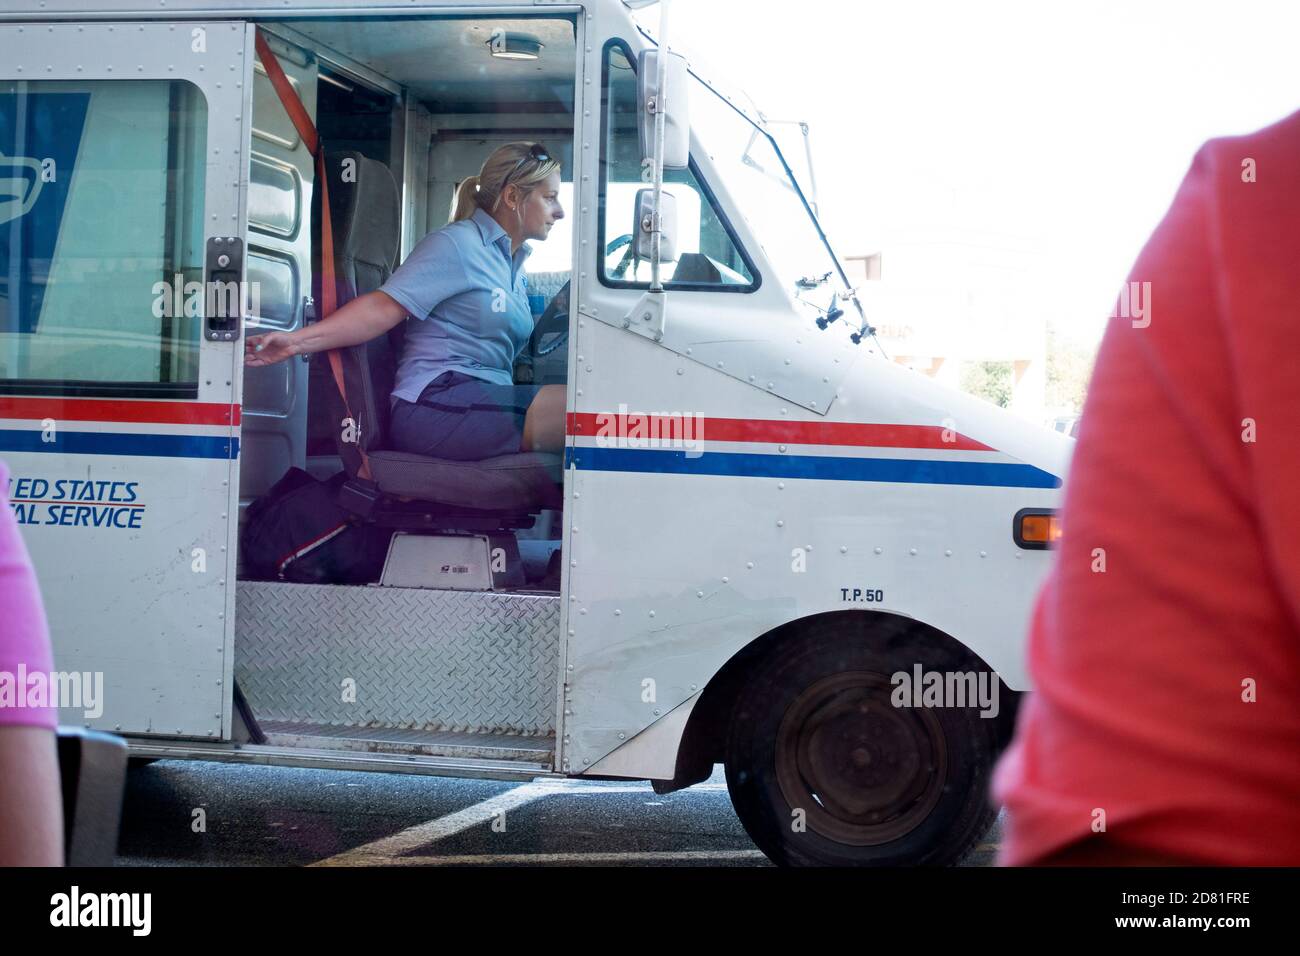 Un transporteur de courrier féminin livrant le courrier dans un camion postal. Downers Grove Illinois, Illinois, États-Unis Banque D'Images